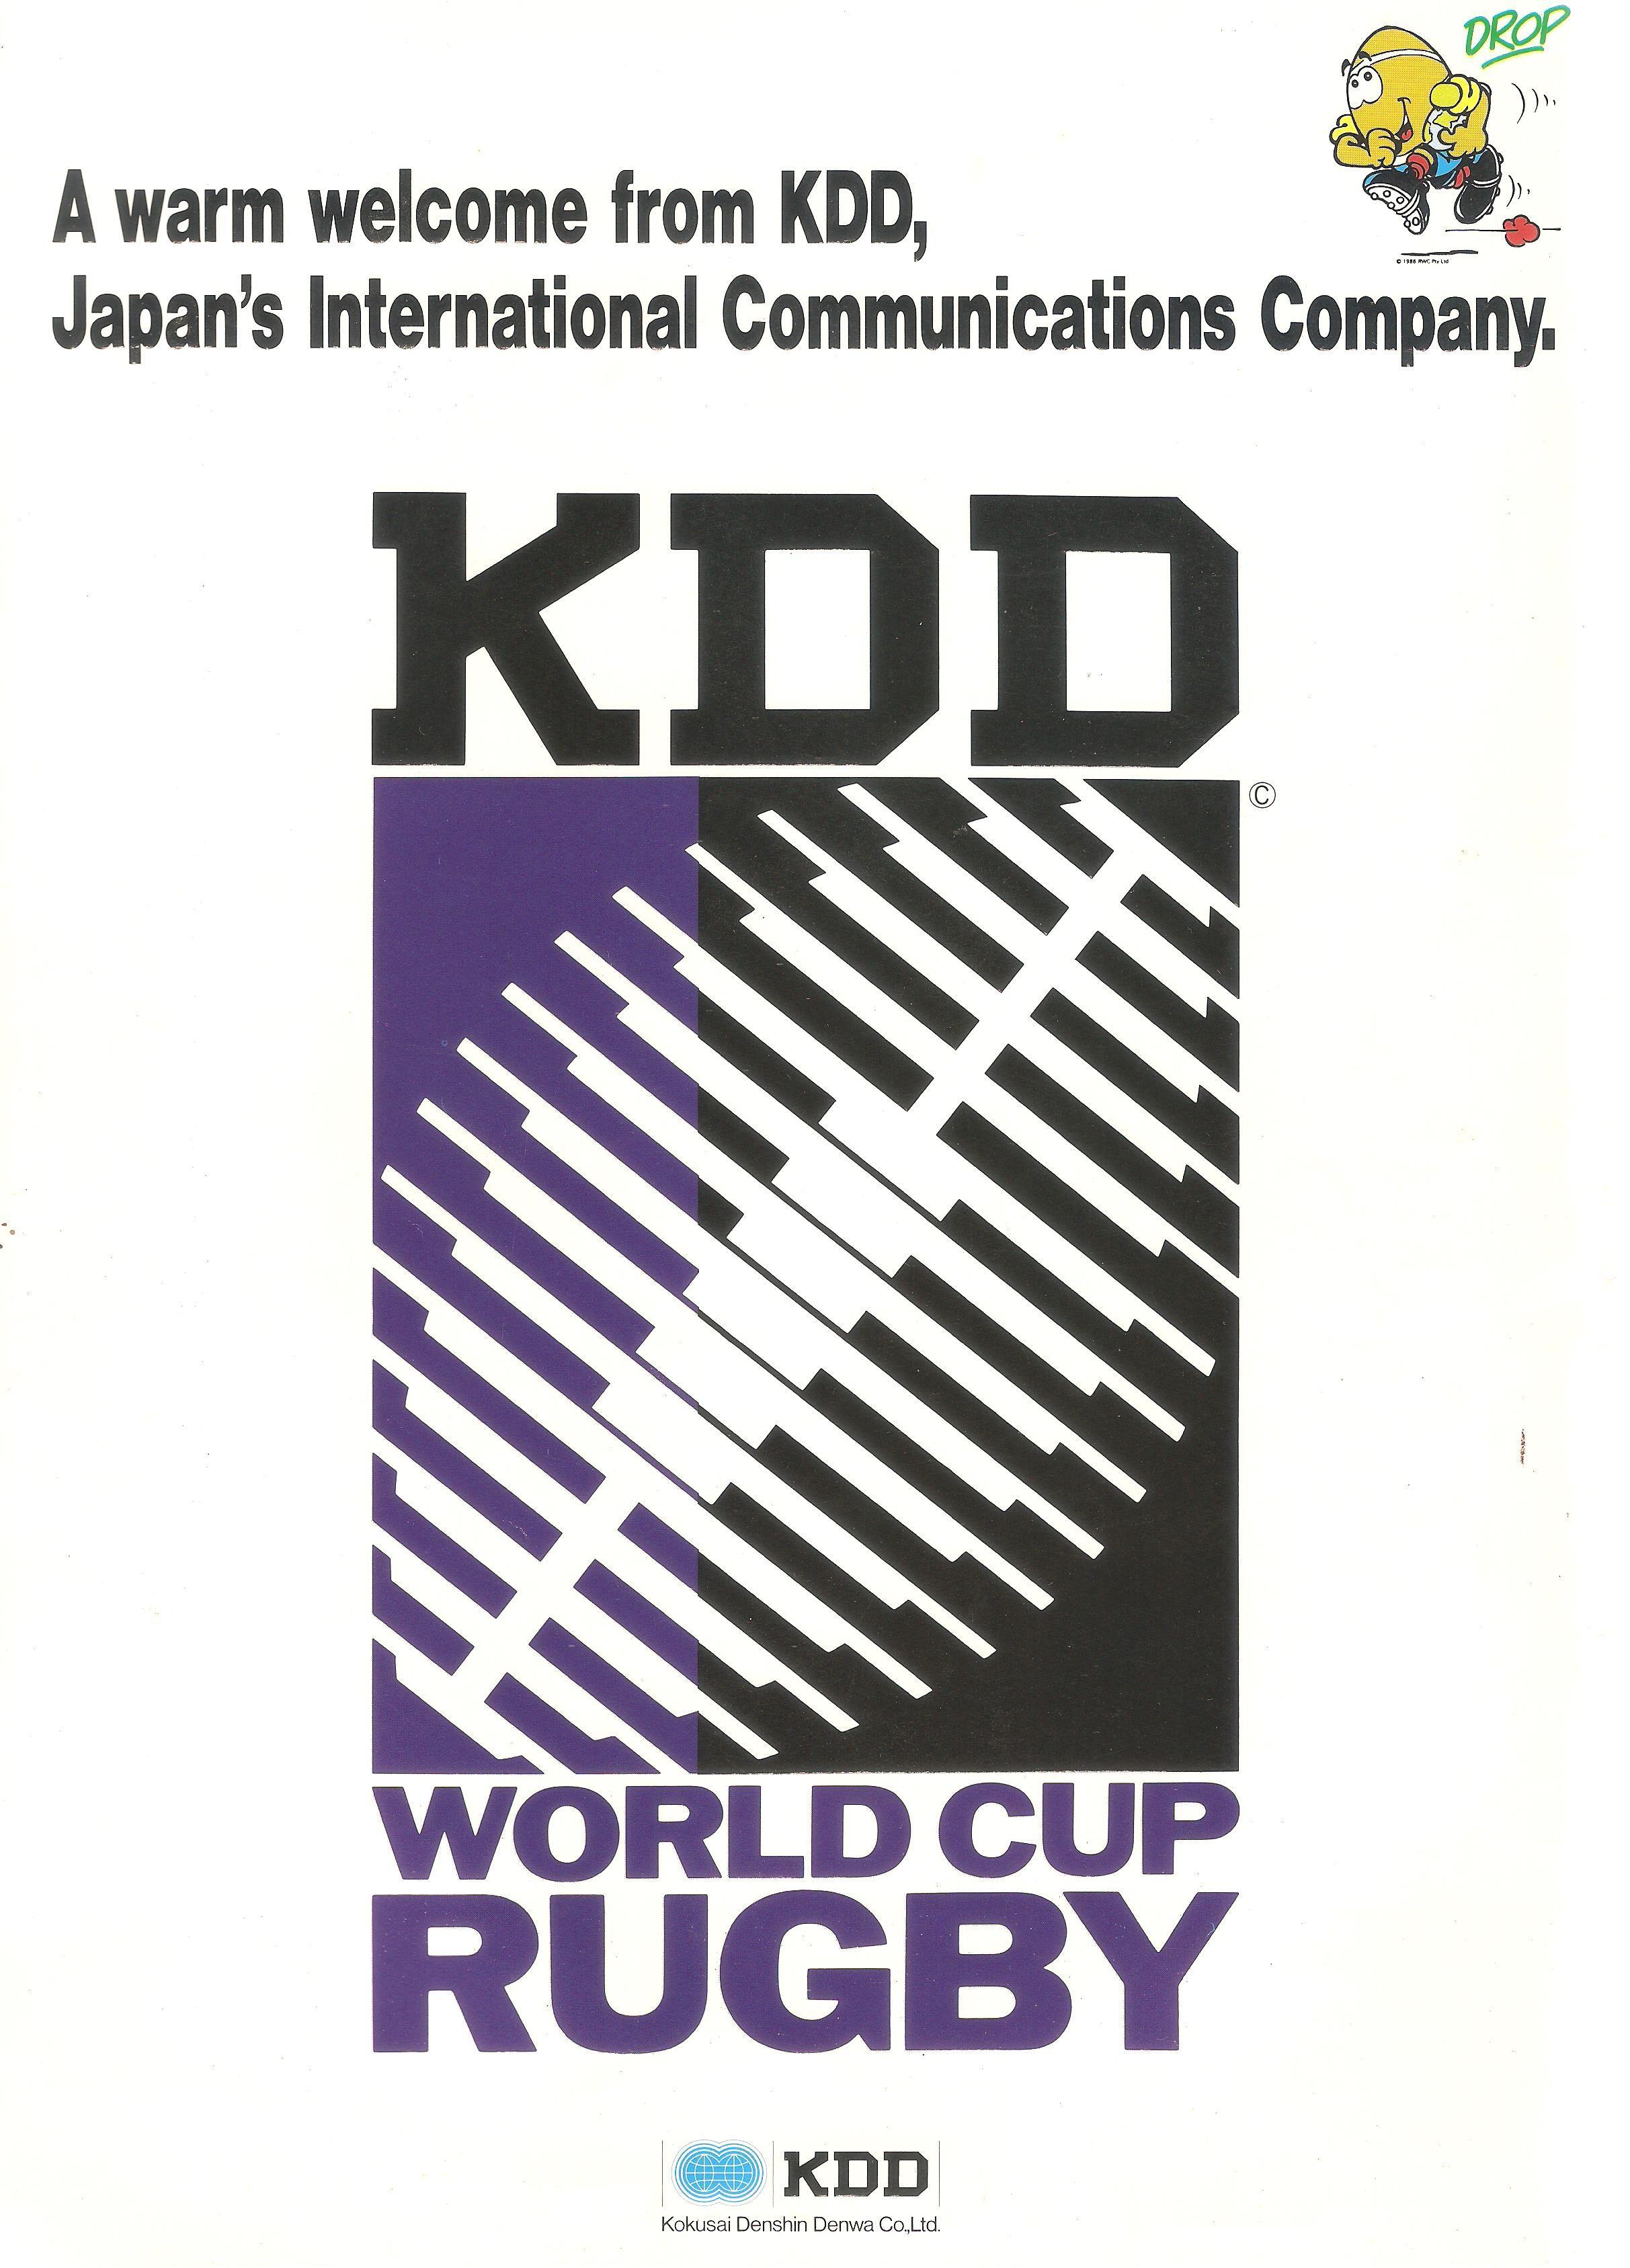 KDD Logo - TDIH: May 22 1987